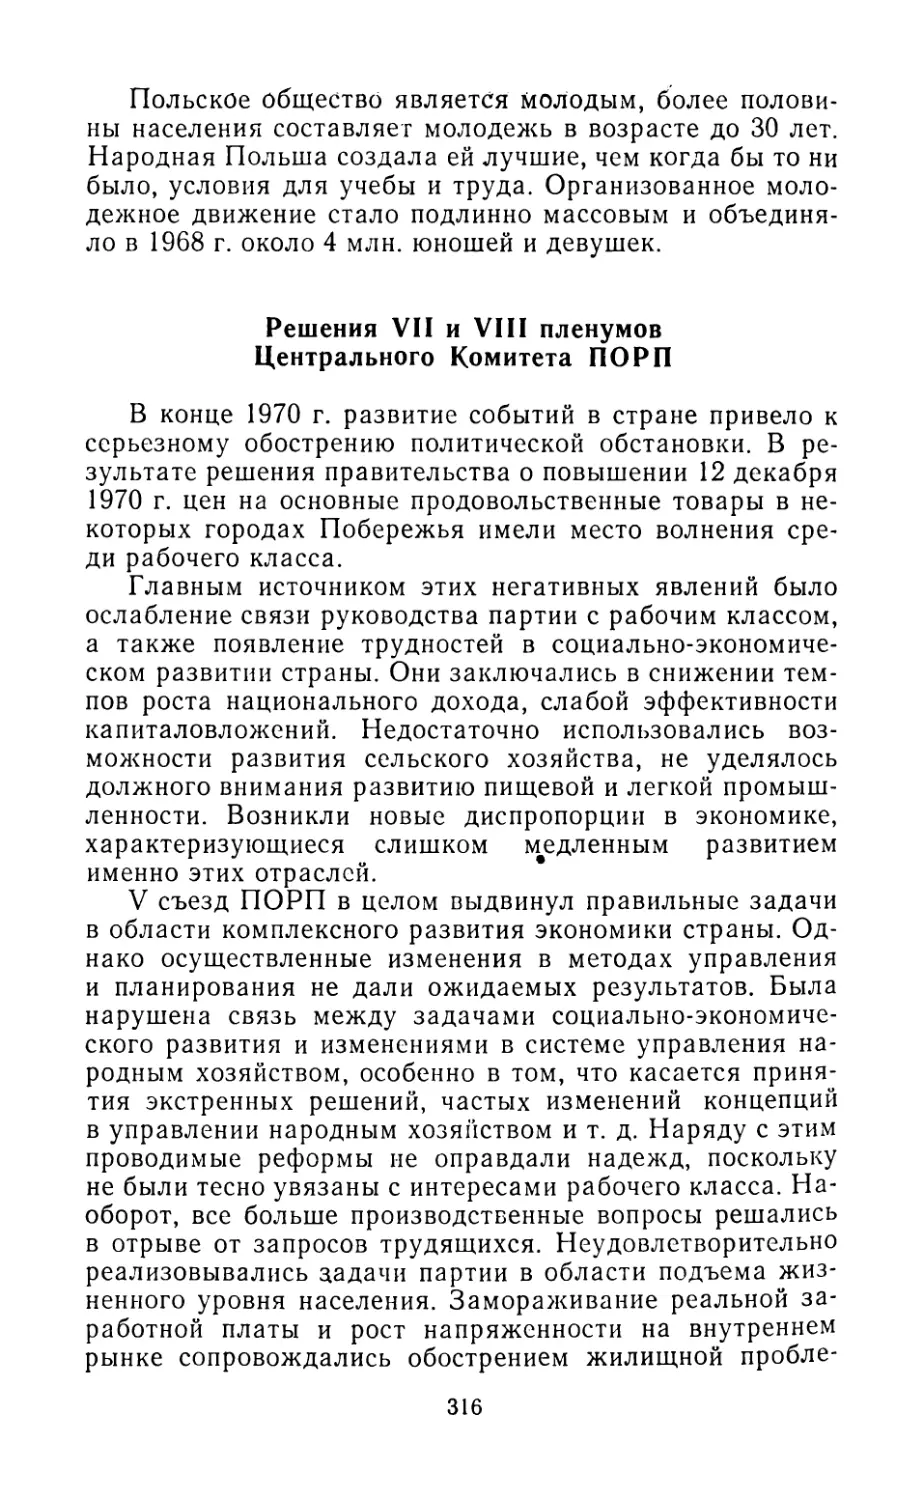 Решения VII и VIII пленумов Центрального Комитета ПОРП